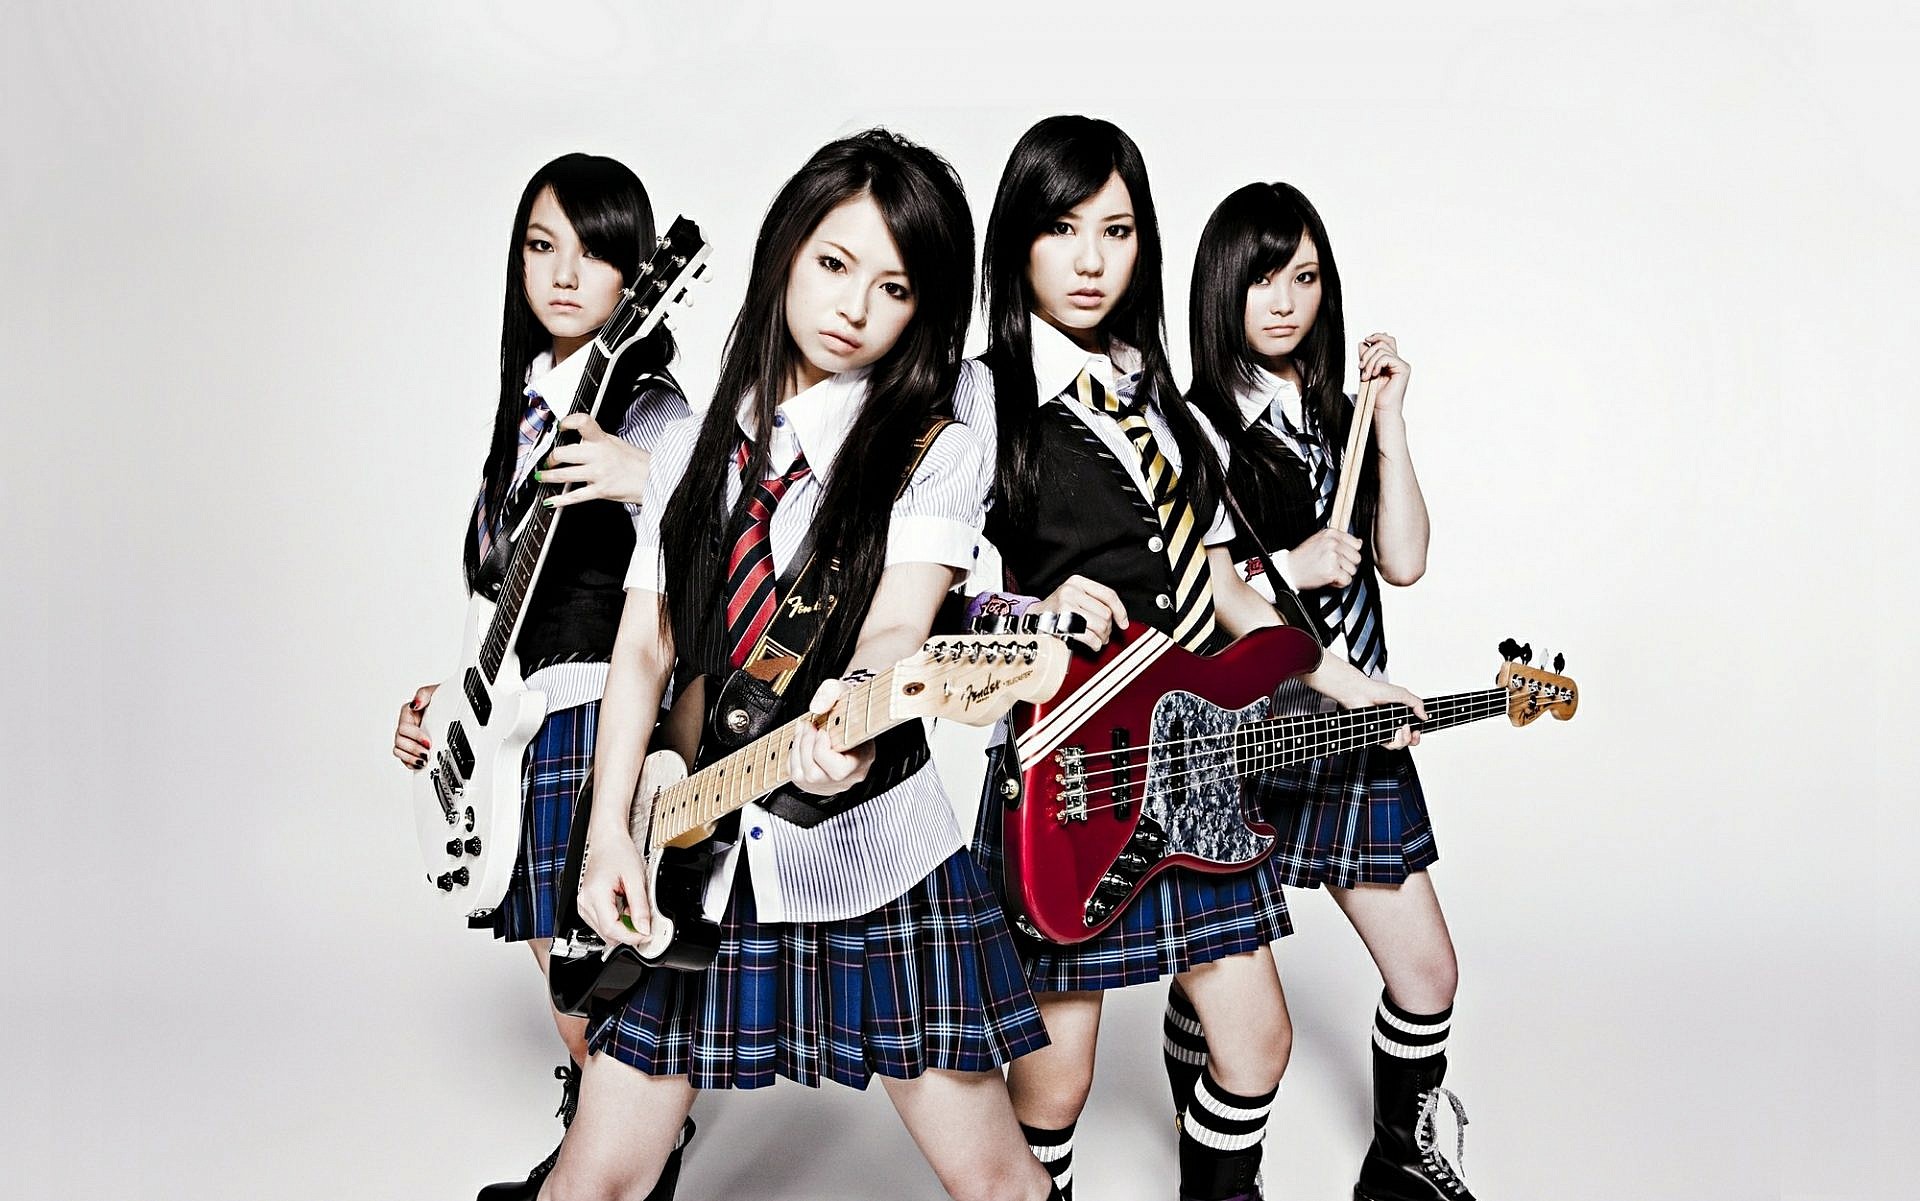 ทำความรู้จักกับ “Scandal” วงดนตรี J-Rock 4 สาวจากญี่ปุ่น